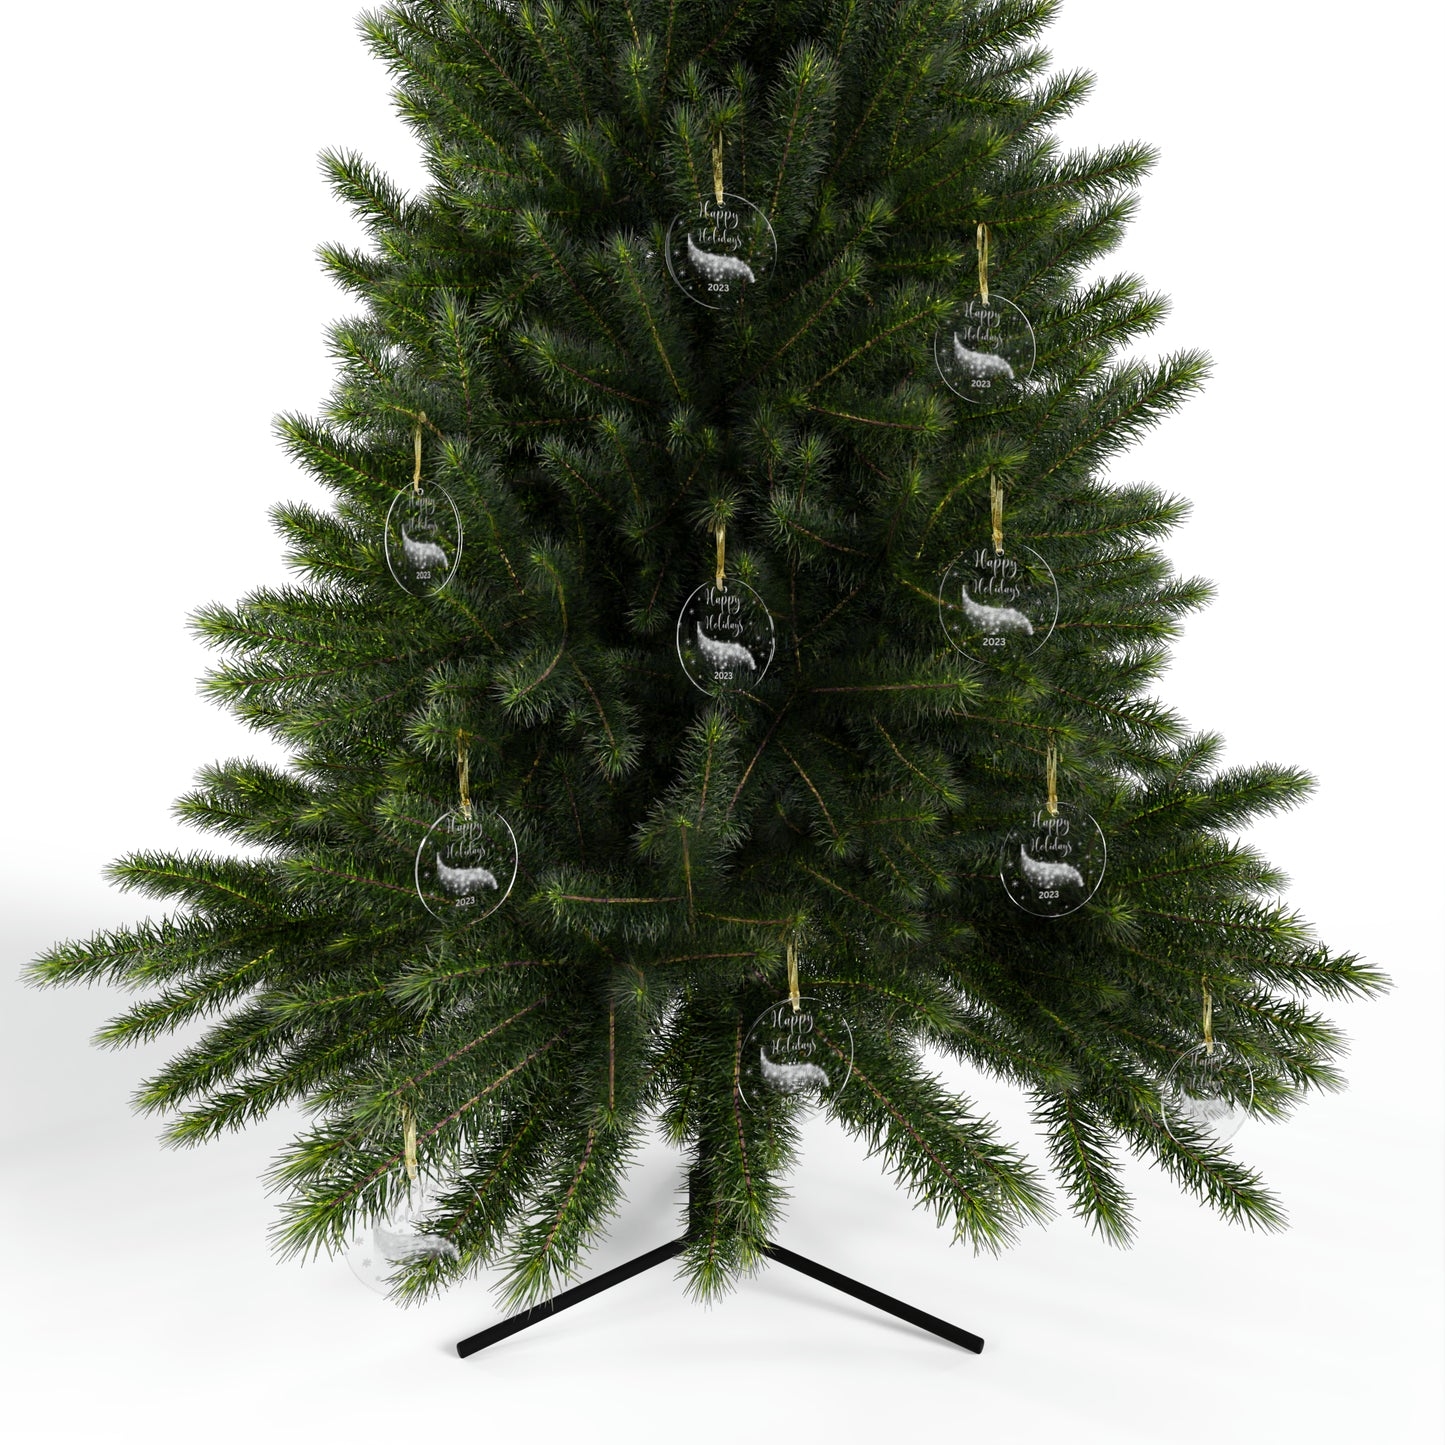 Happy Holidays 2023 Acrylic Ornaments